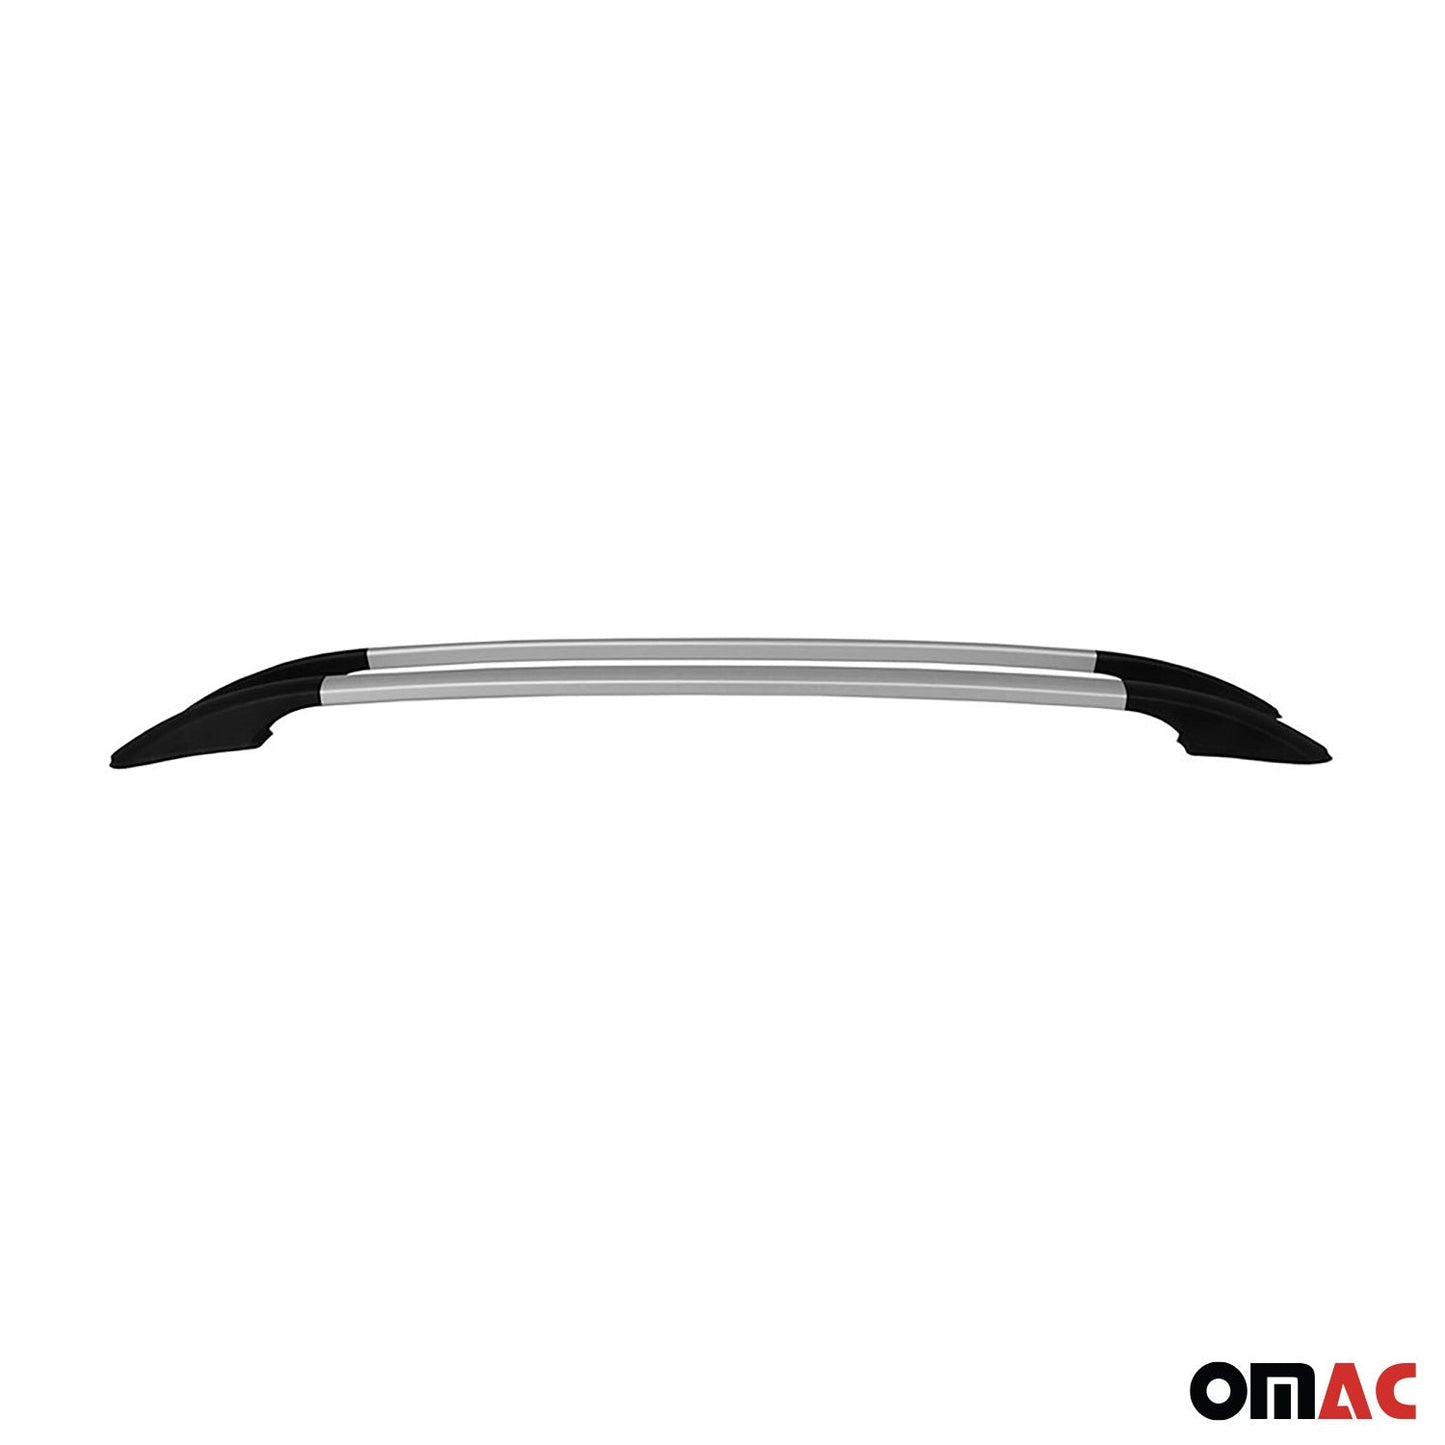 OMAC Roof Rack Side Rails Aluminium for Audi A3 Hatchback 2006-2013 Gray 2 Pcs '3246934